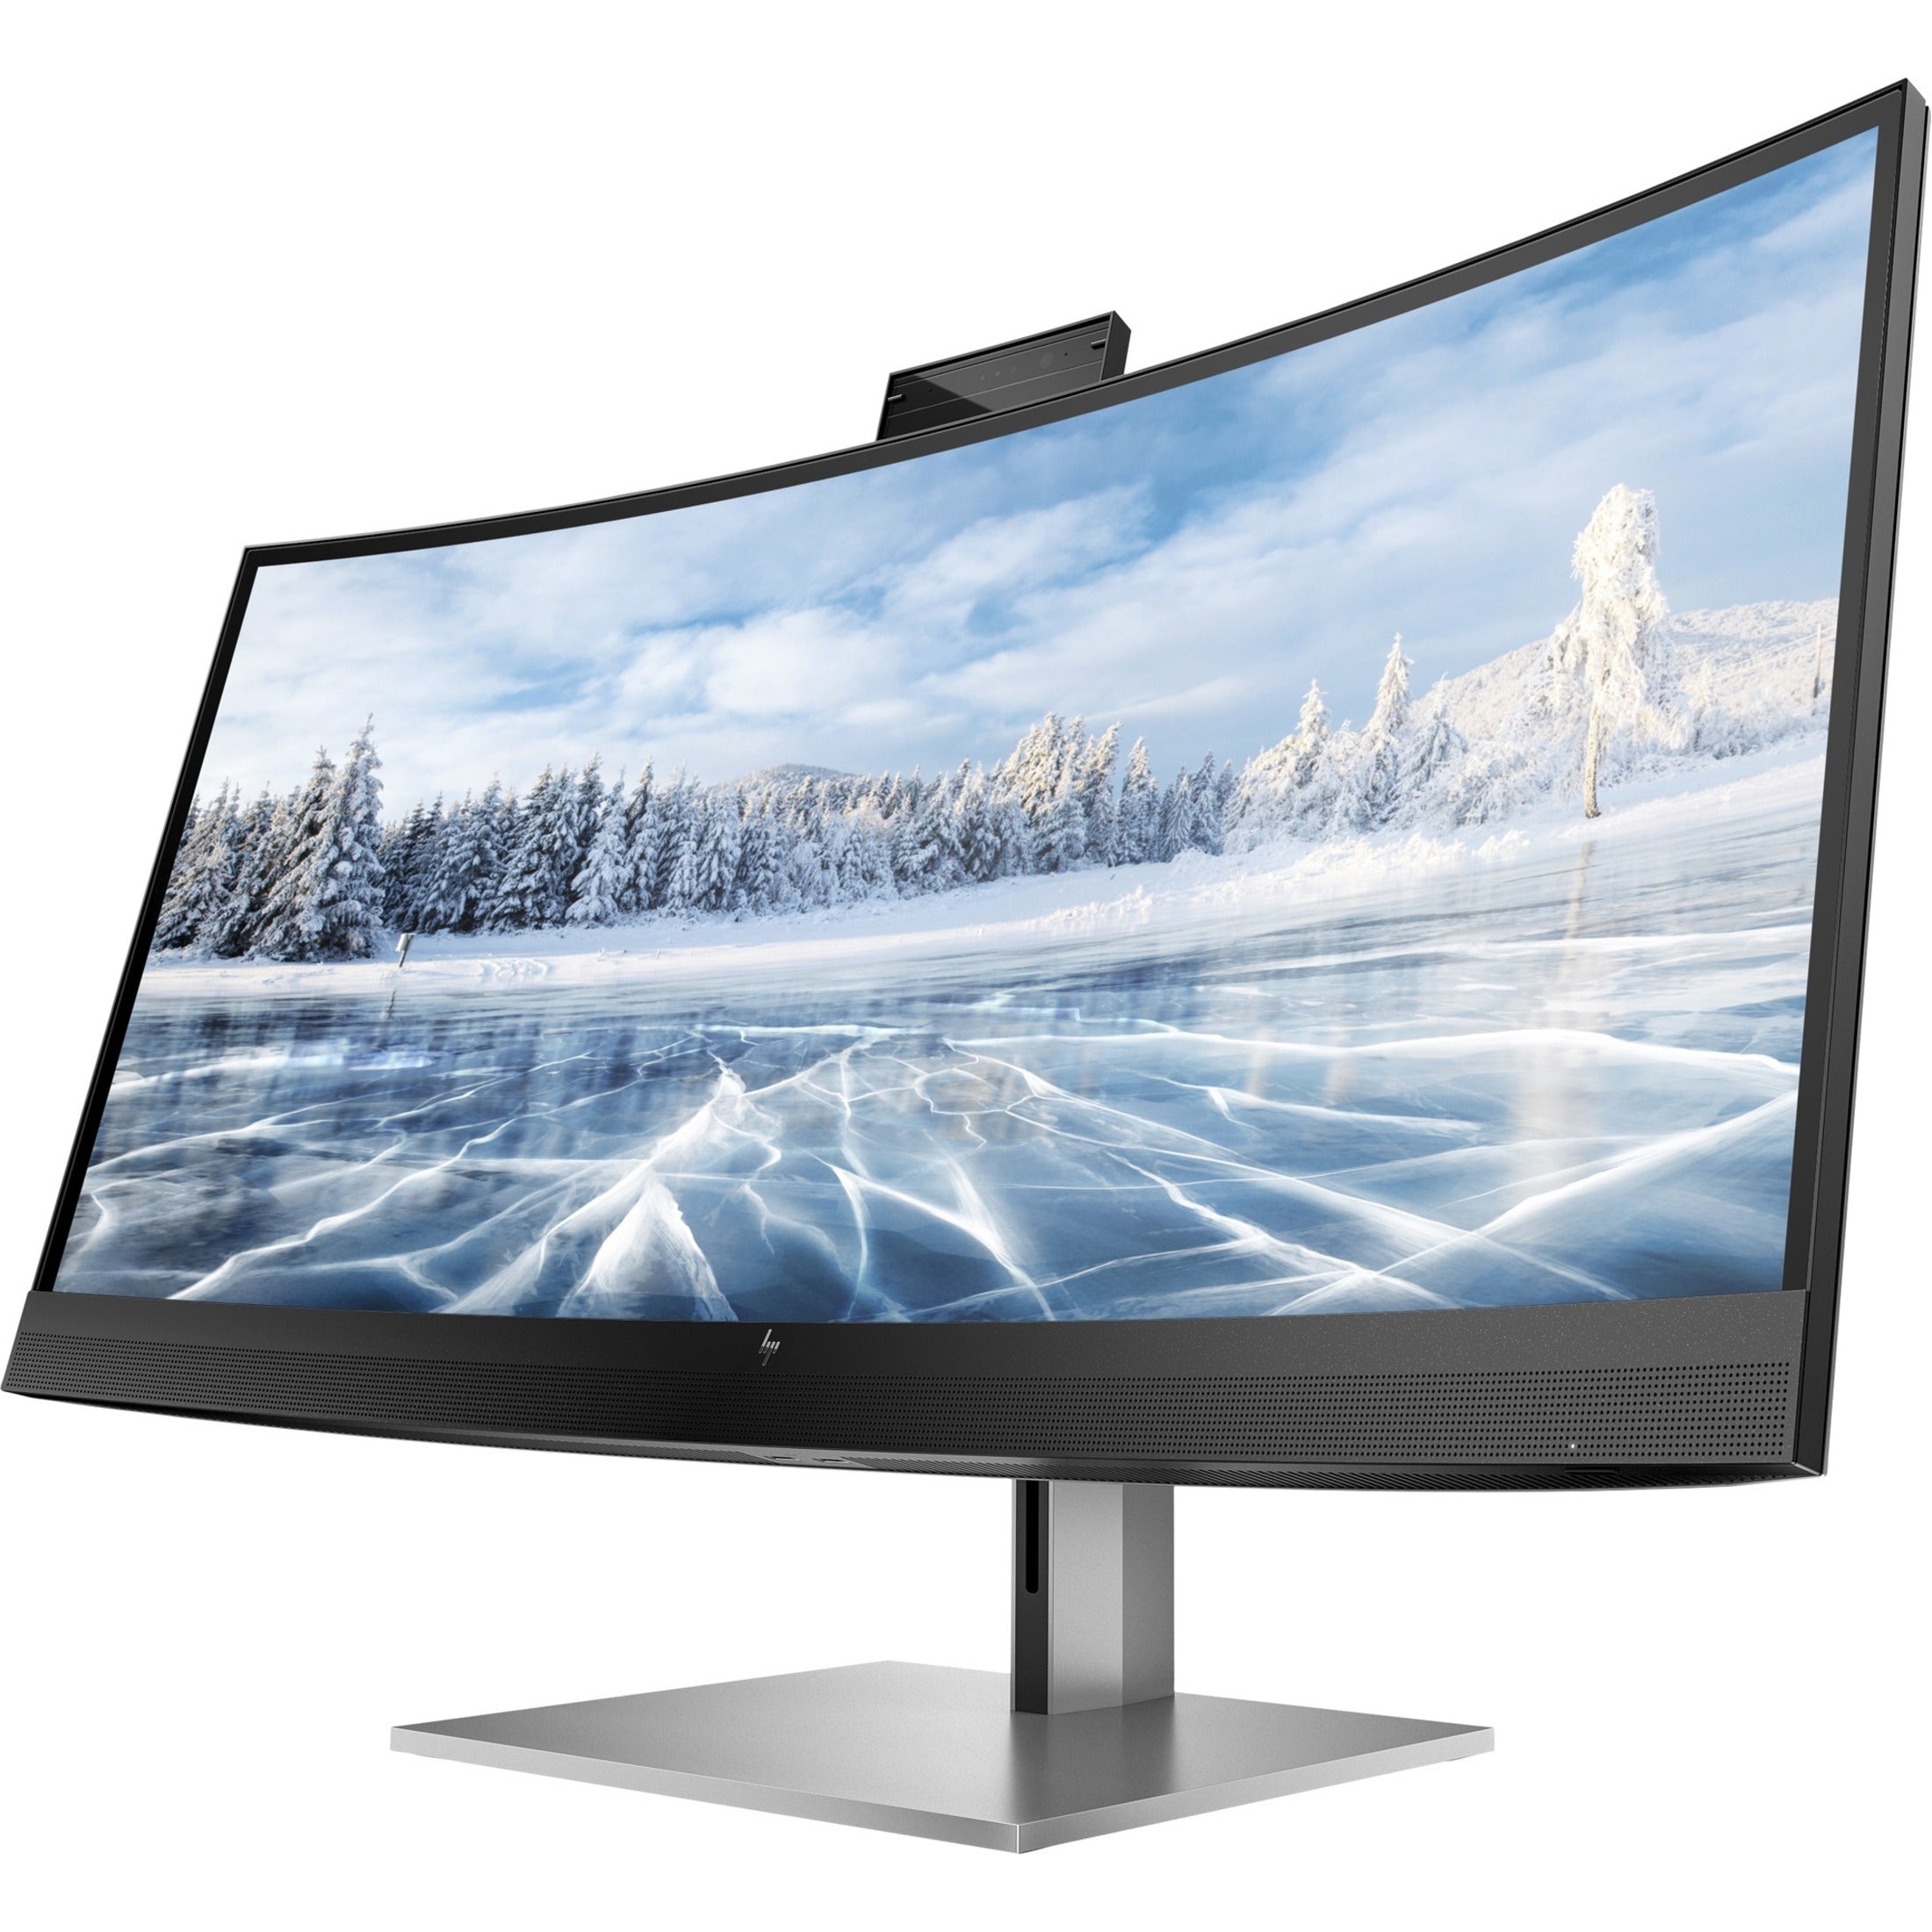 HP Z34c G3 WQHD Curved Display, 34, 3440 x 1440, 99% sRGB, USB-C, HDMI, Webcam [Discontinued]